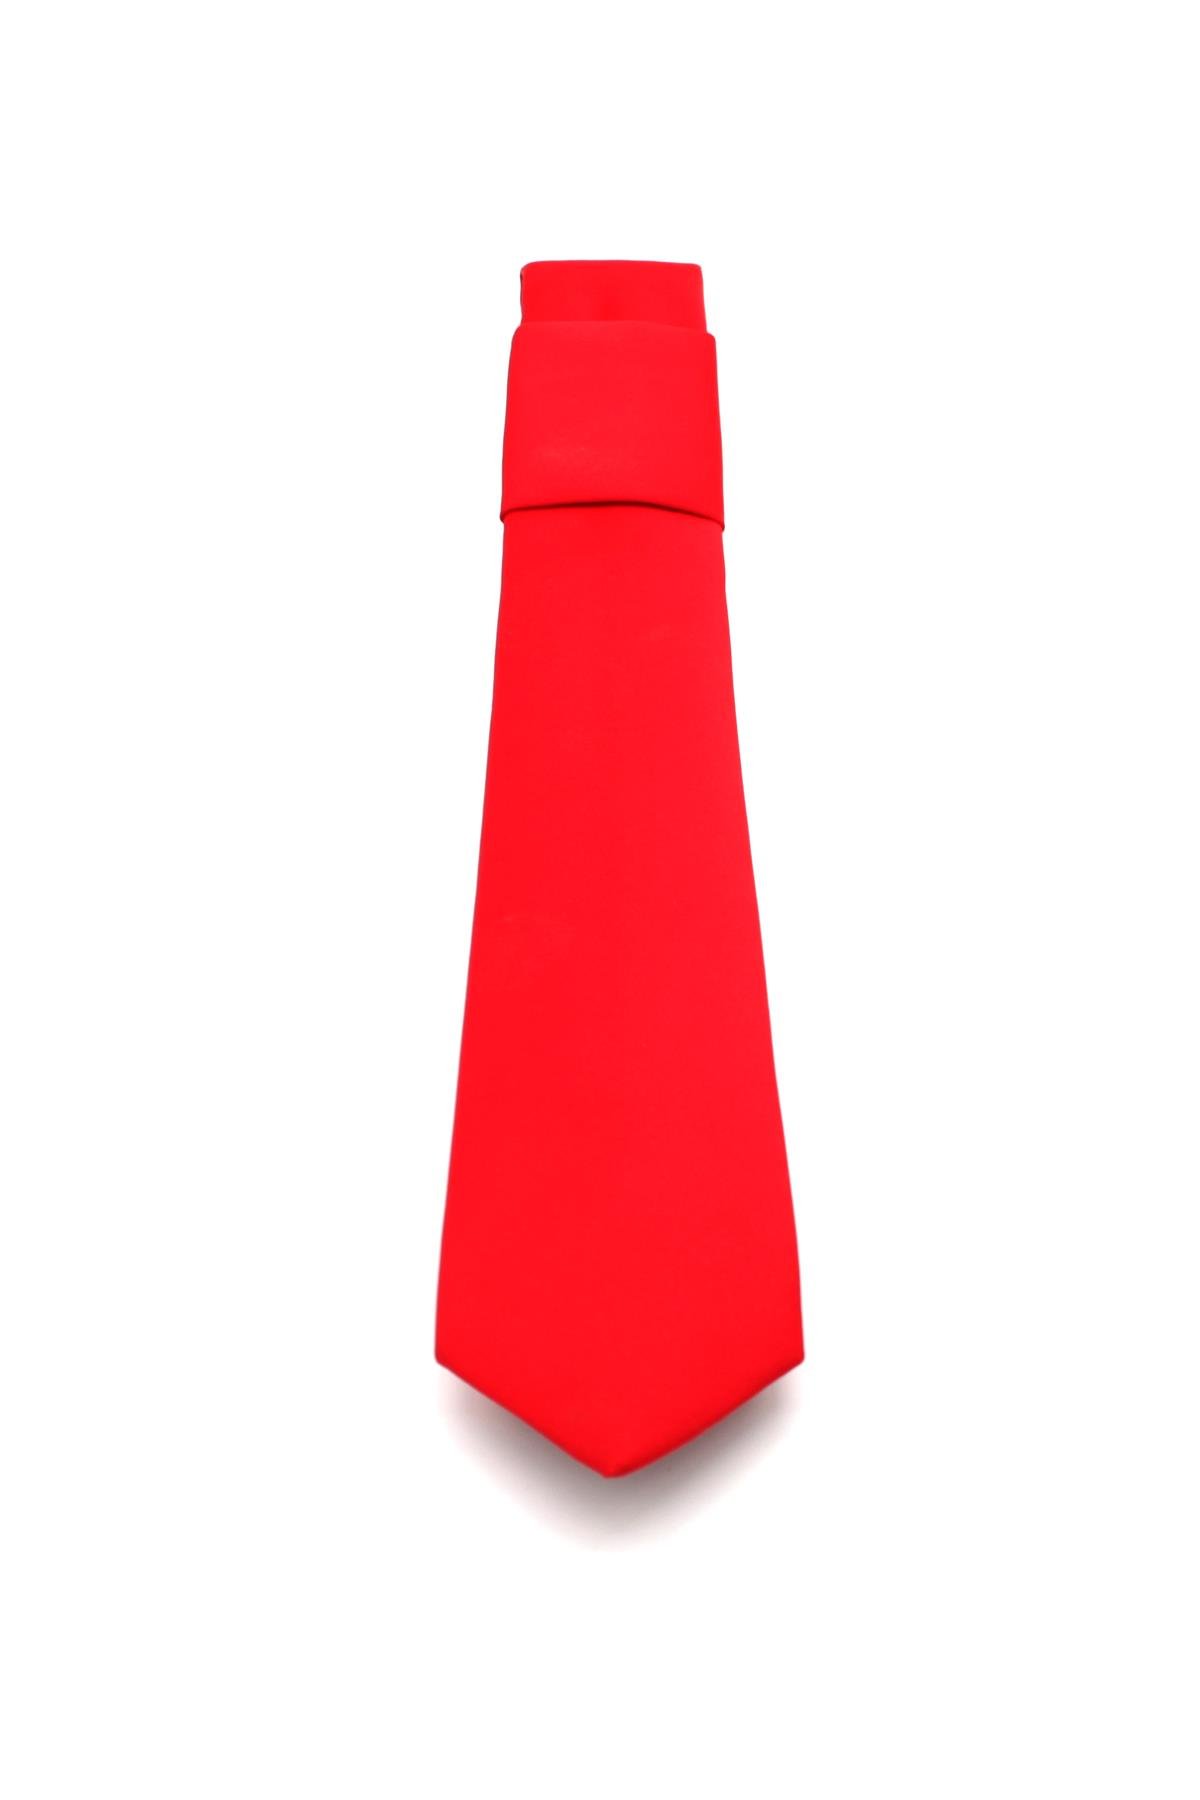 Fitmens | Erkek Gömlek ve Aksesuar Online Alışveriş Mağazası | Erkek Kravat  Mendil Seti K02 - Kırmızı